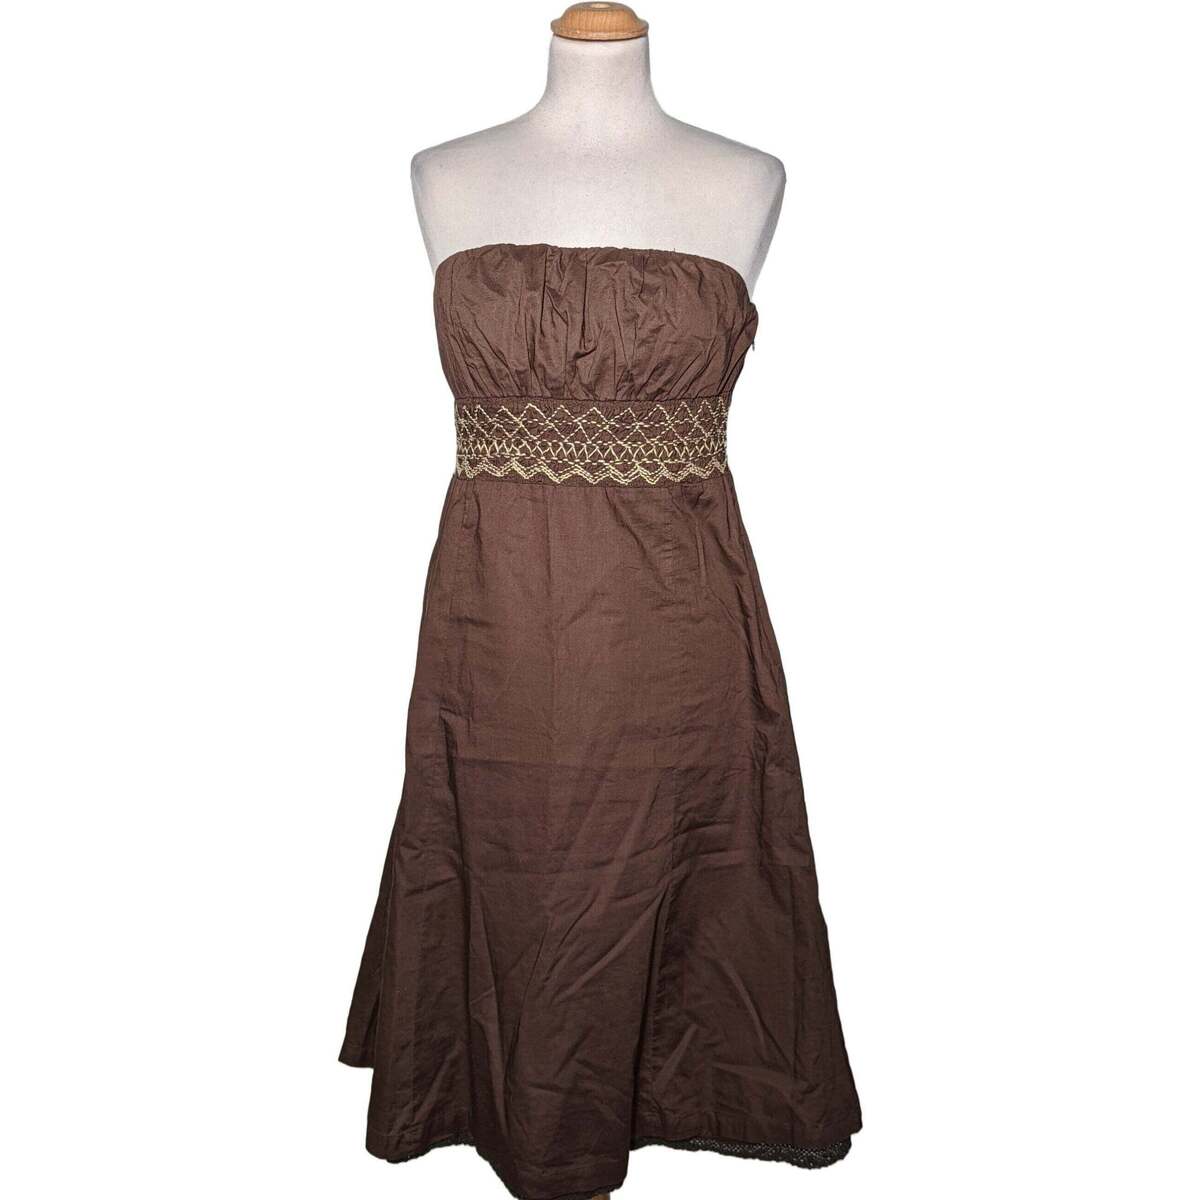 Vêtements Femme Connectez-vous pour ajouter un avis robe courte  38 - T2 - M Marron Marron